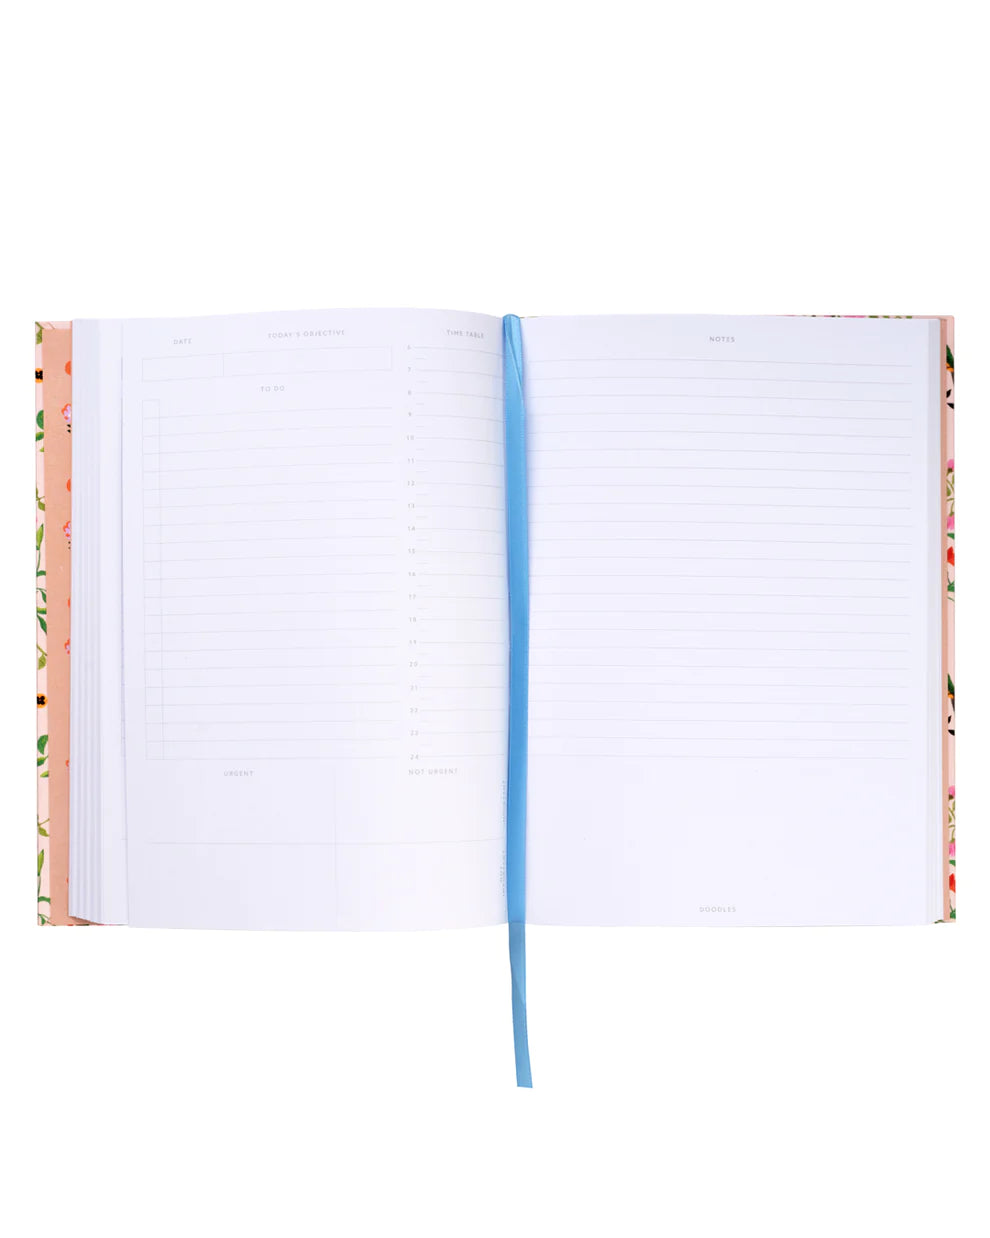 Cuaderno Painted Pansies 10475 - Cath Kidston x Ohh Deer